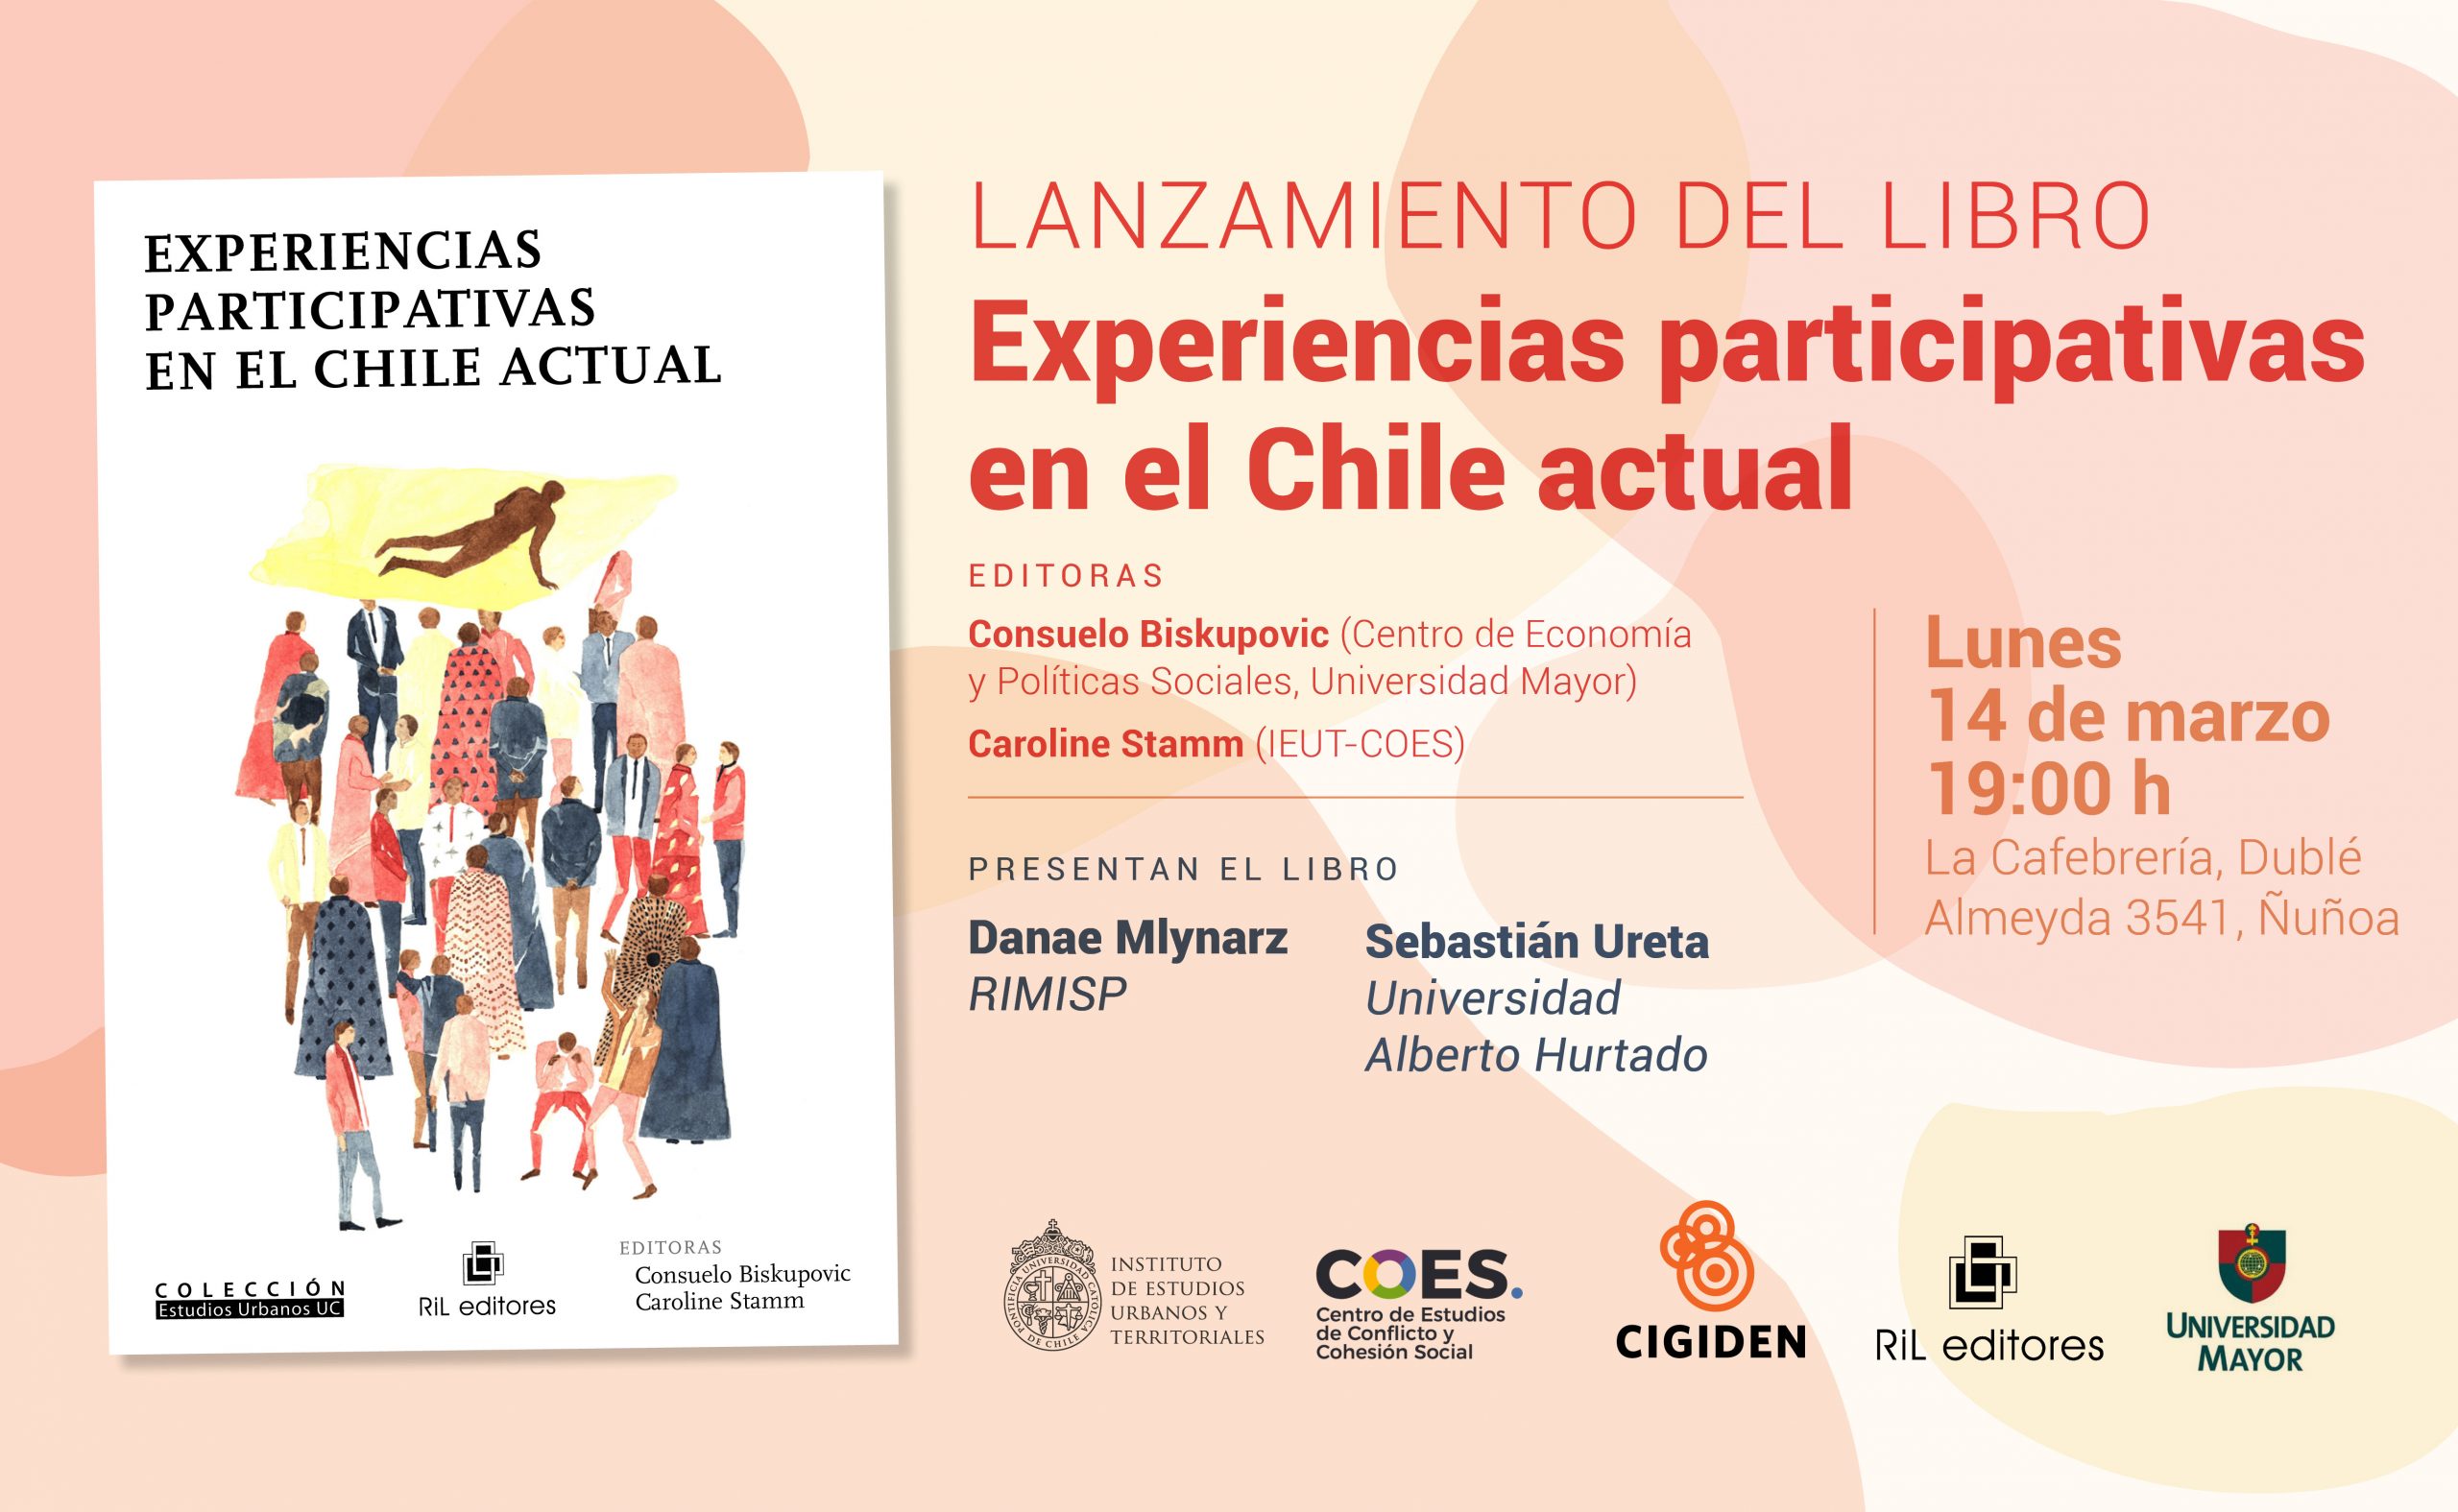 Lanzamiento del Libro | Experiencias participativas en el Chile actua